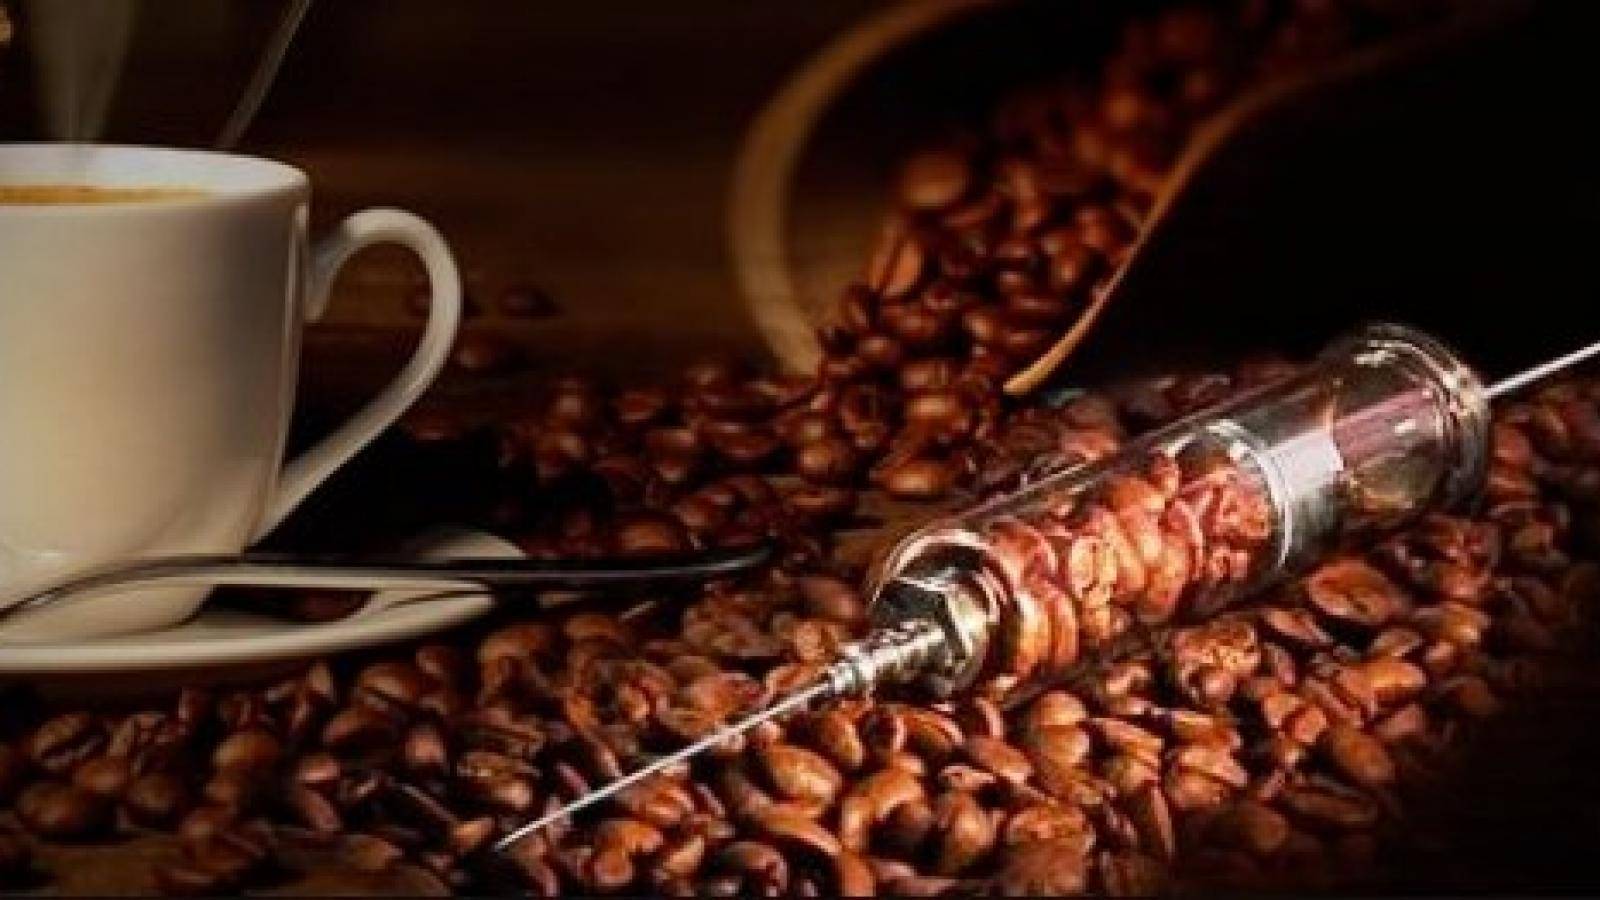 У вас кофеиновая зависимость! 8 признаков передозировки кофе